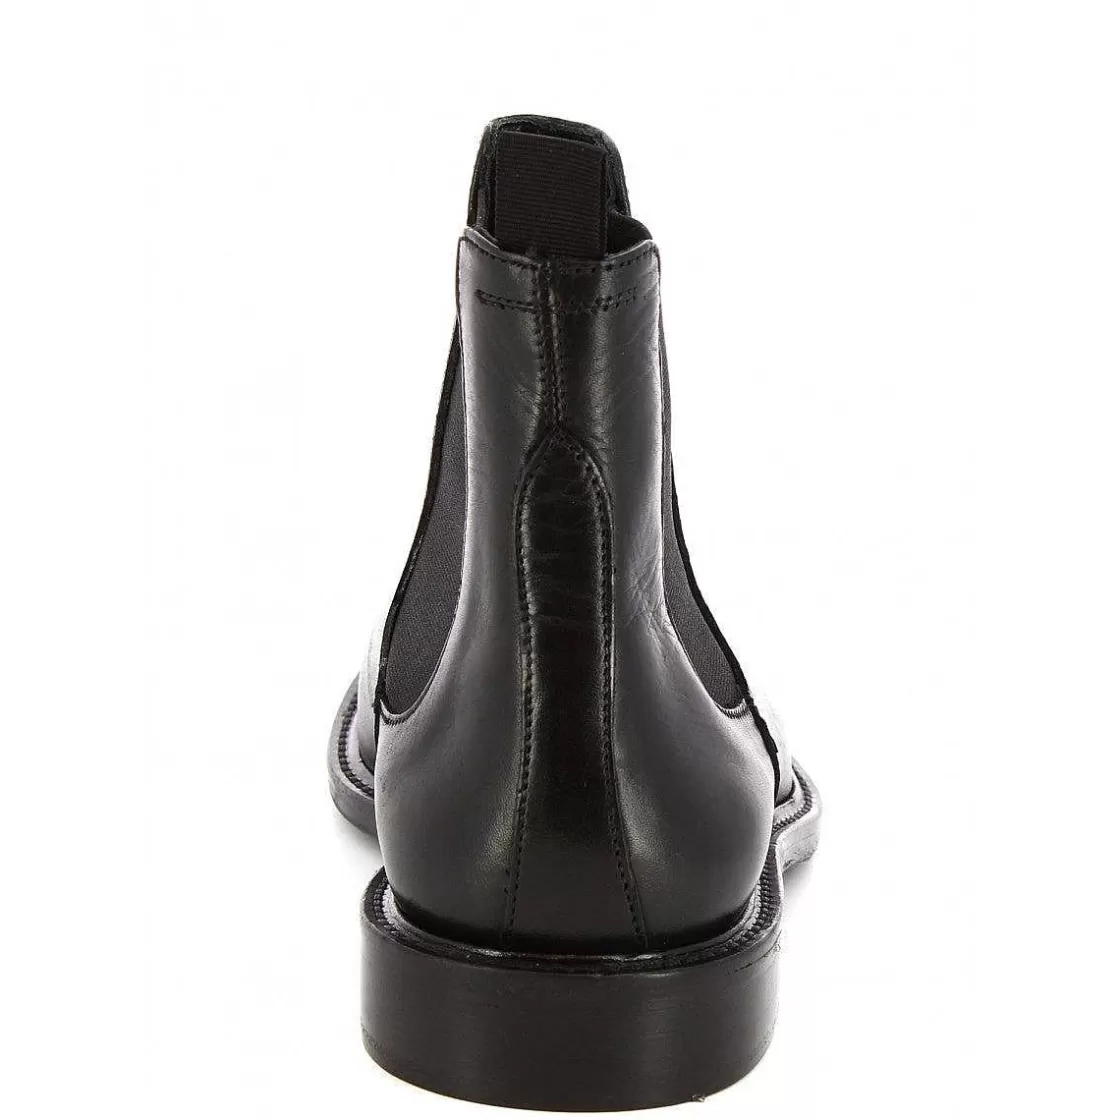 Leonardo Men'S Handmade Elegant Ankle Boots In Black Calf Leather. Online